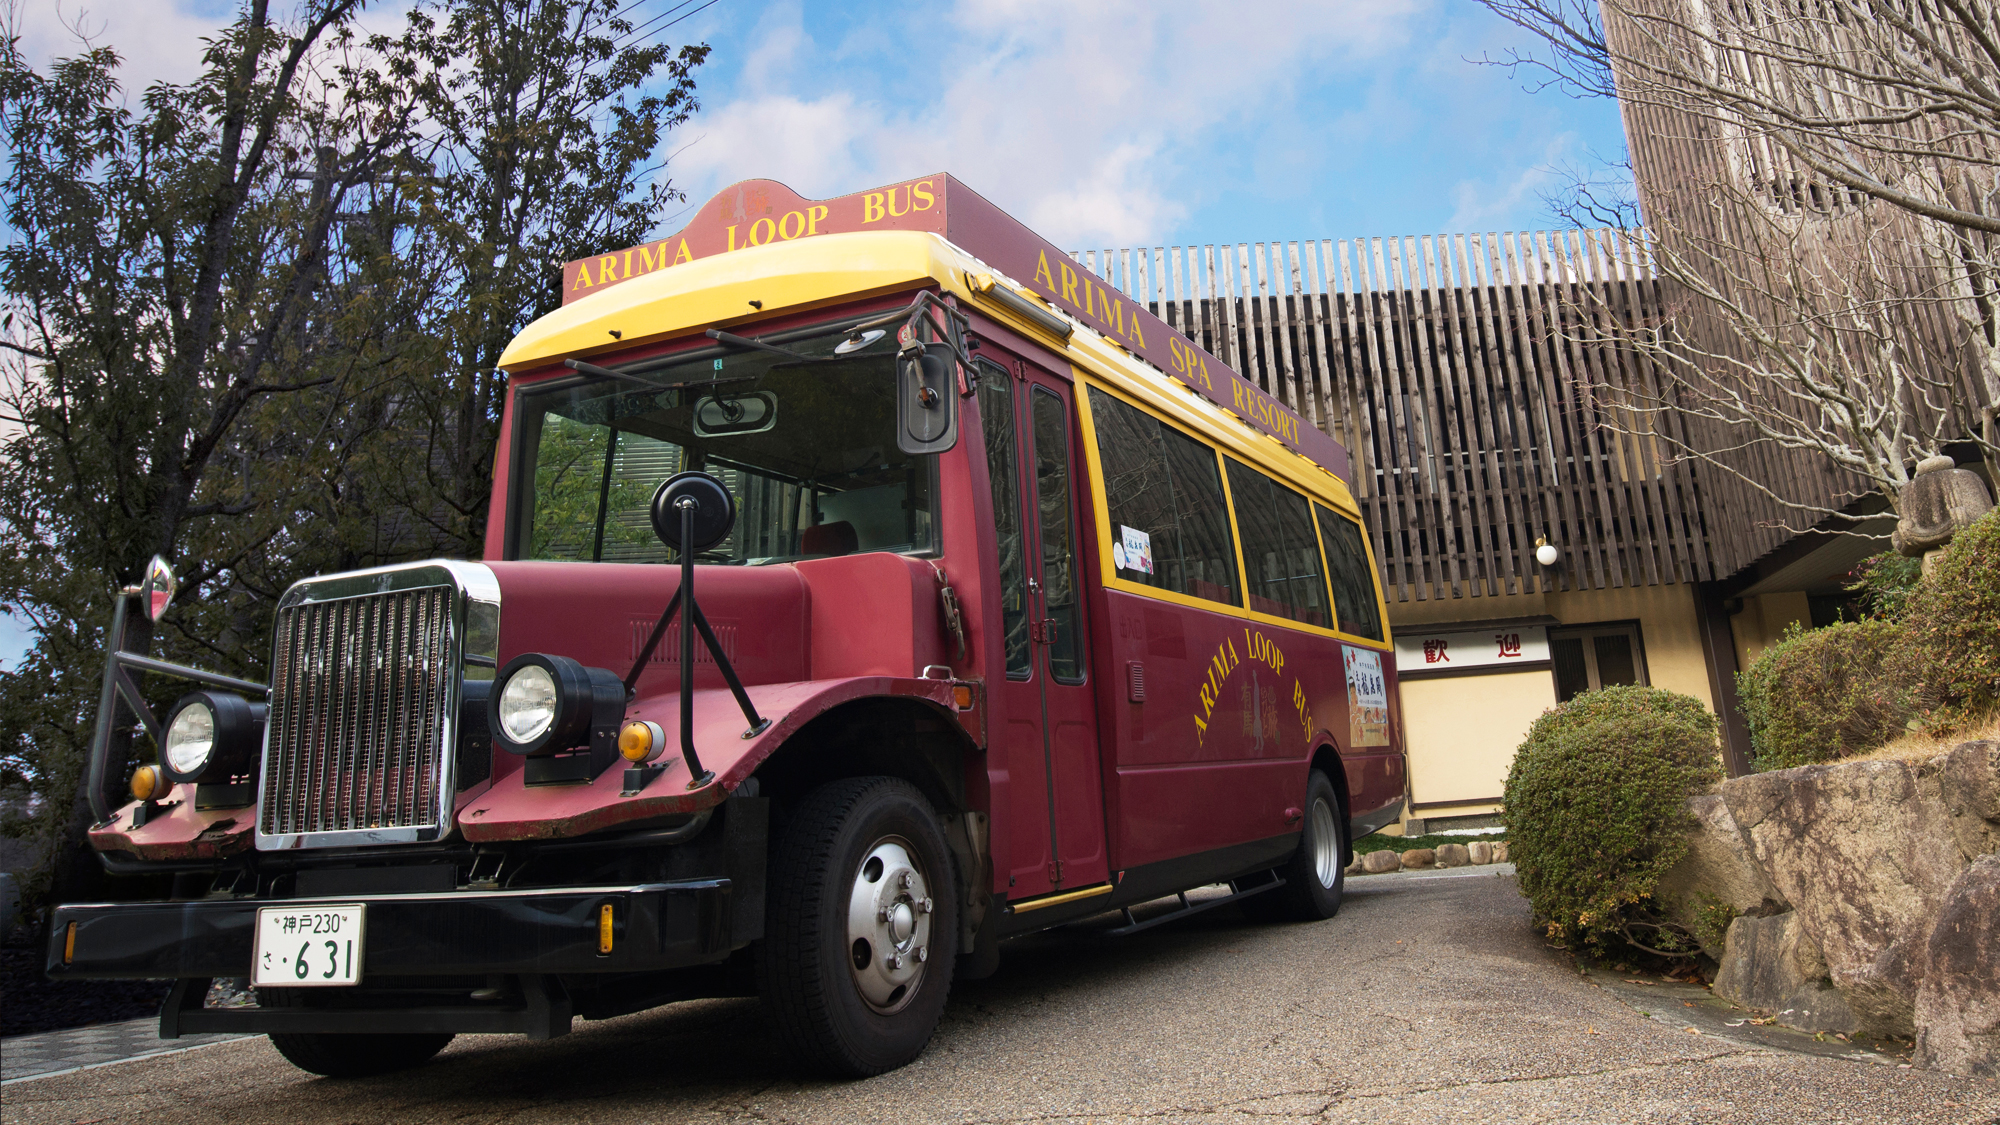 18時15分と20時30分に、旅館と温泉街を繋ぐ無料シャトルバスを運行しております。